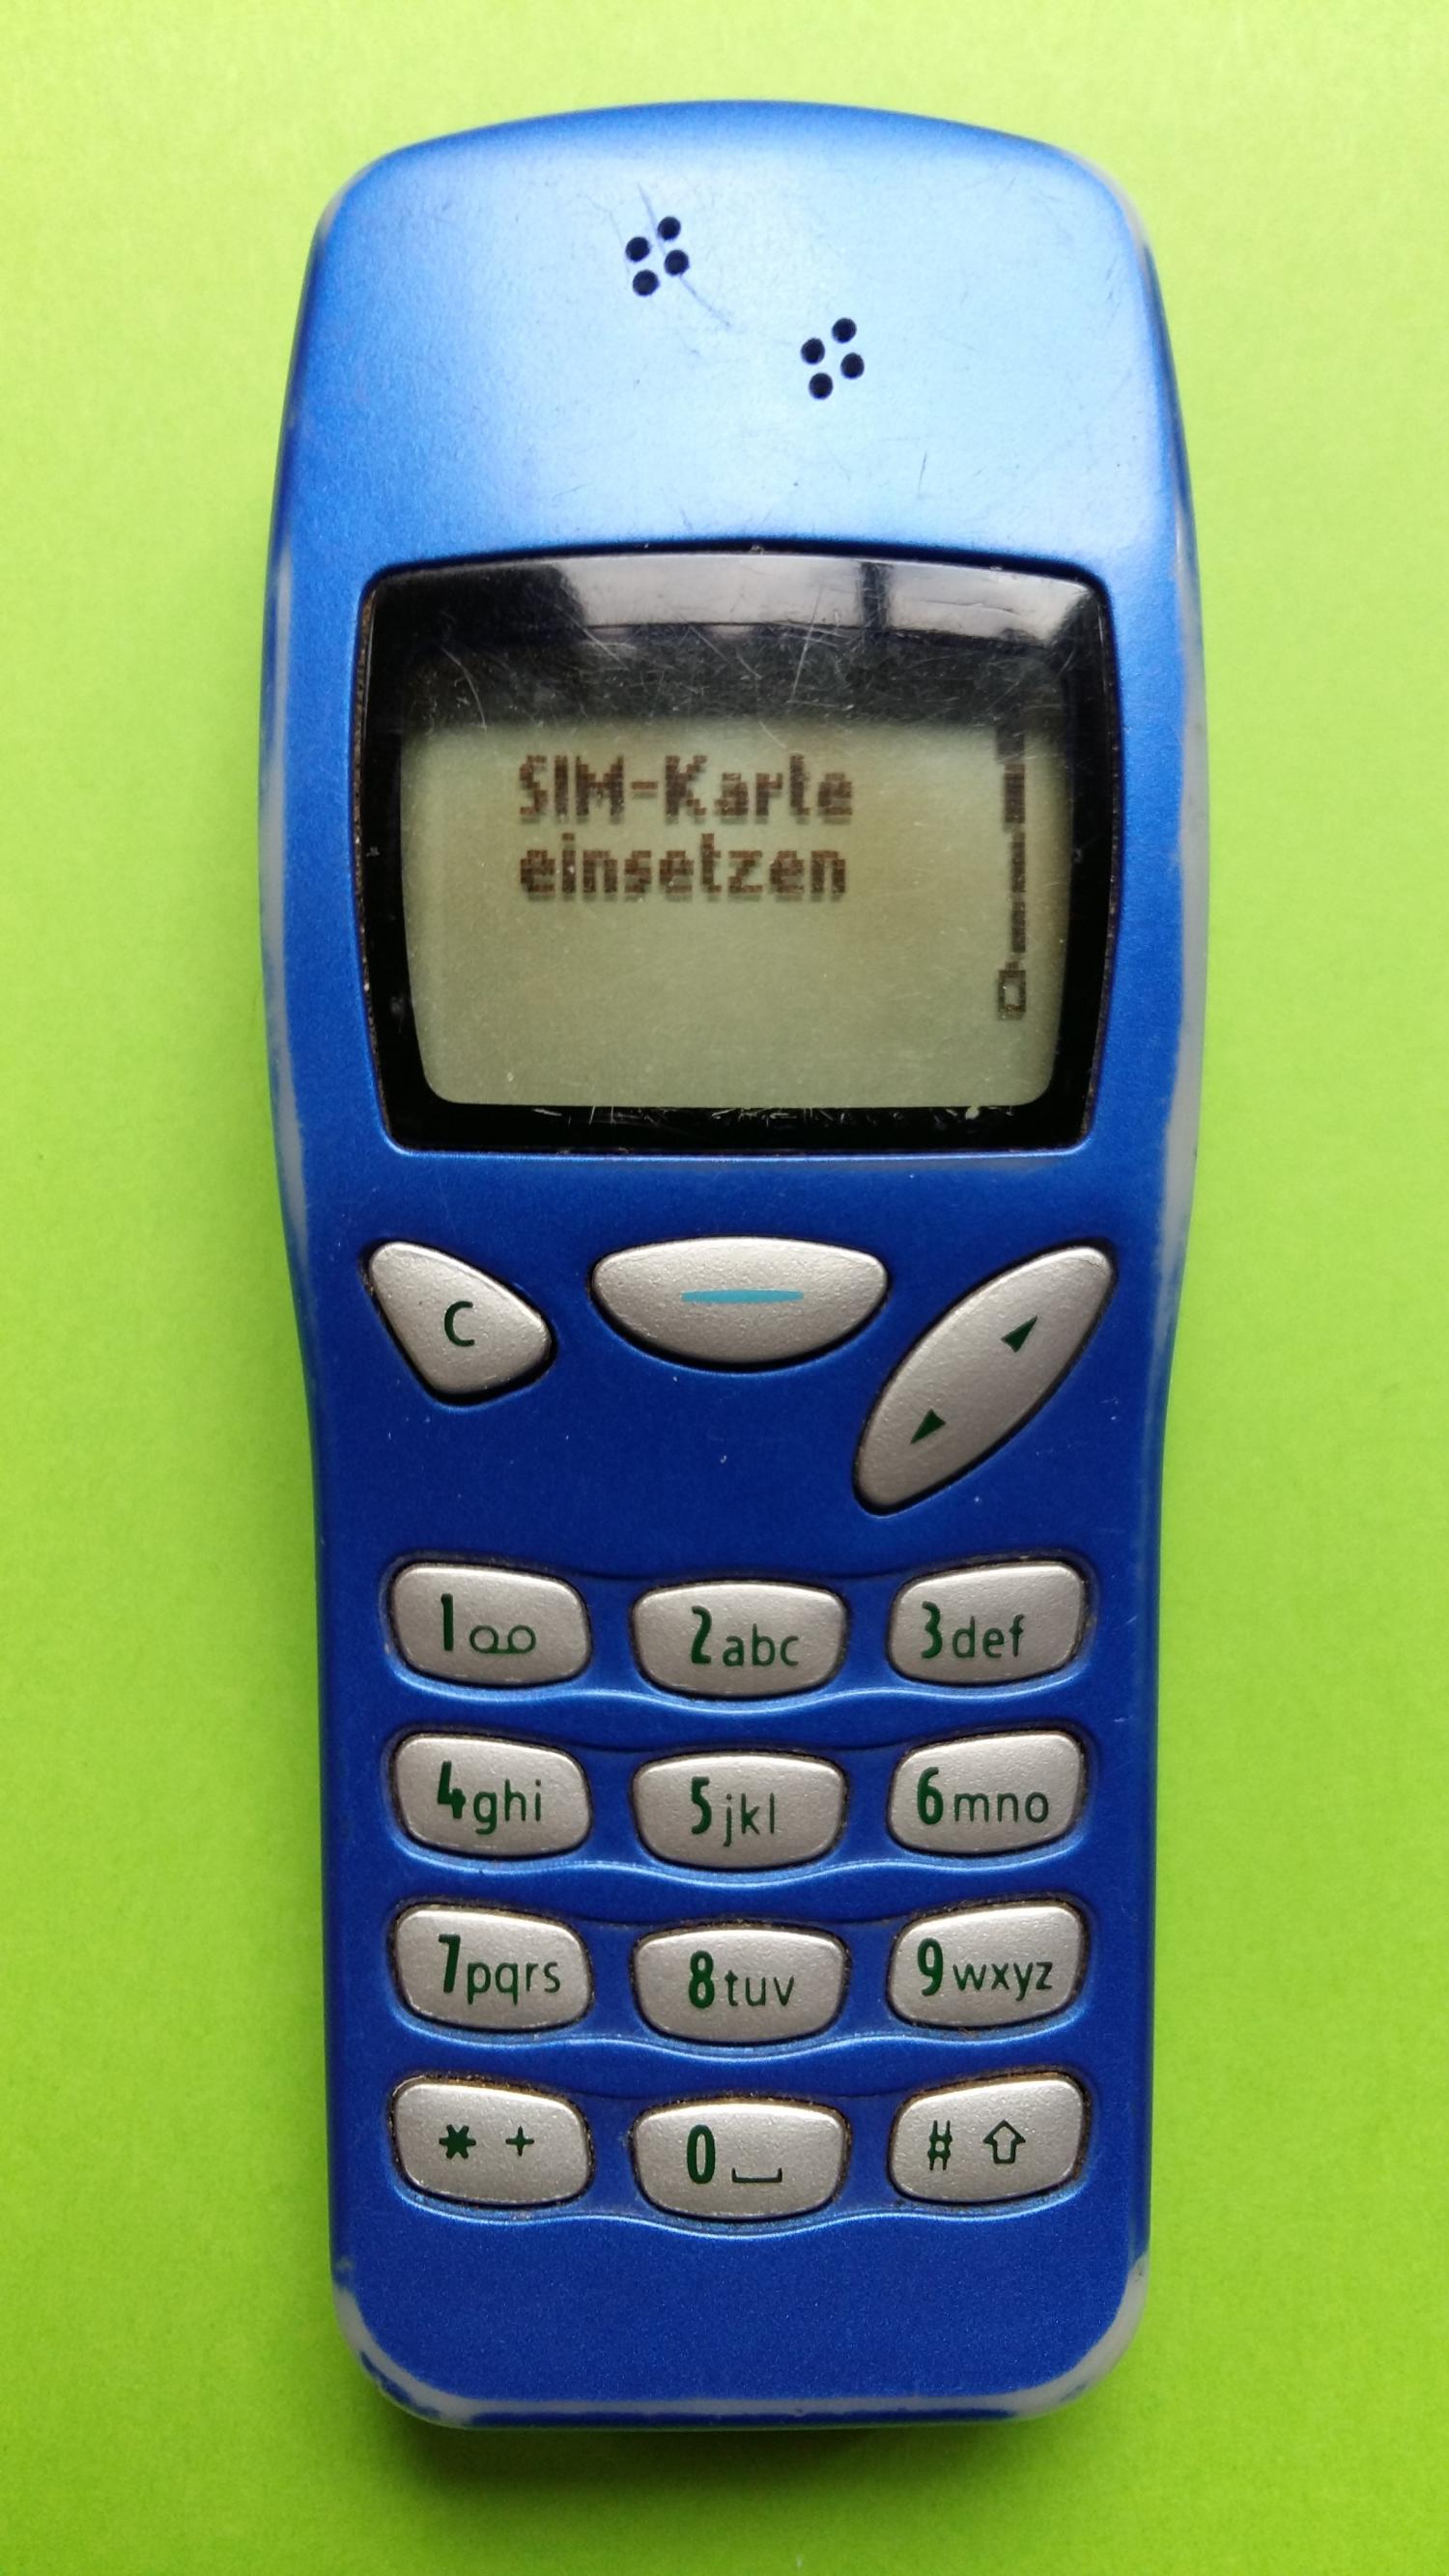 image-7303175-Nokia 3210 (22)1.jpg